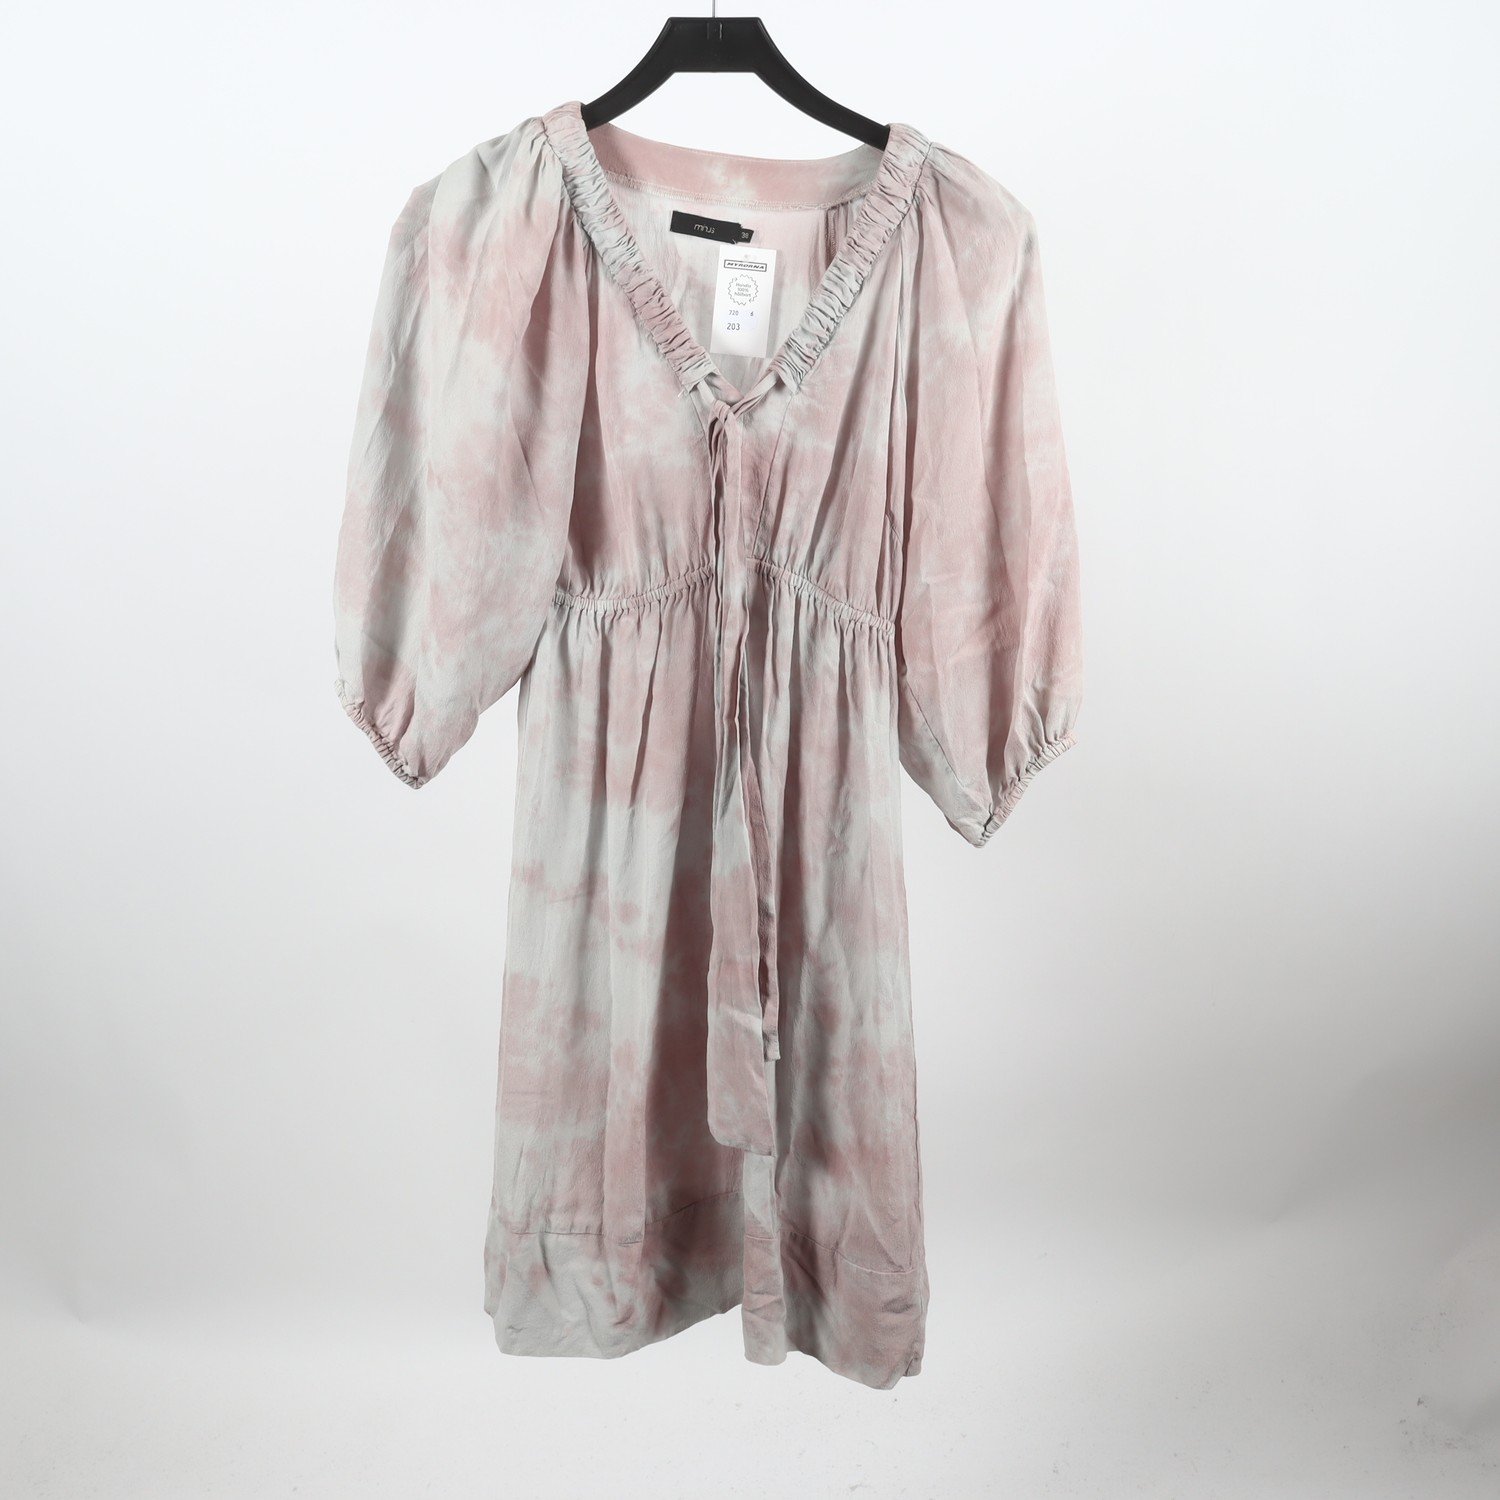 Klänning, Minus, rosa, 100% silk, stl. 38